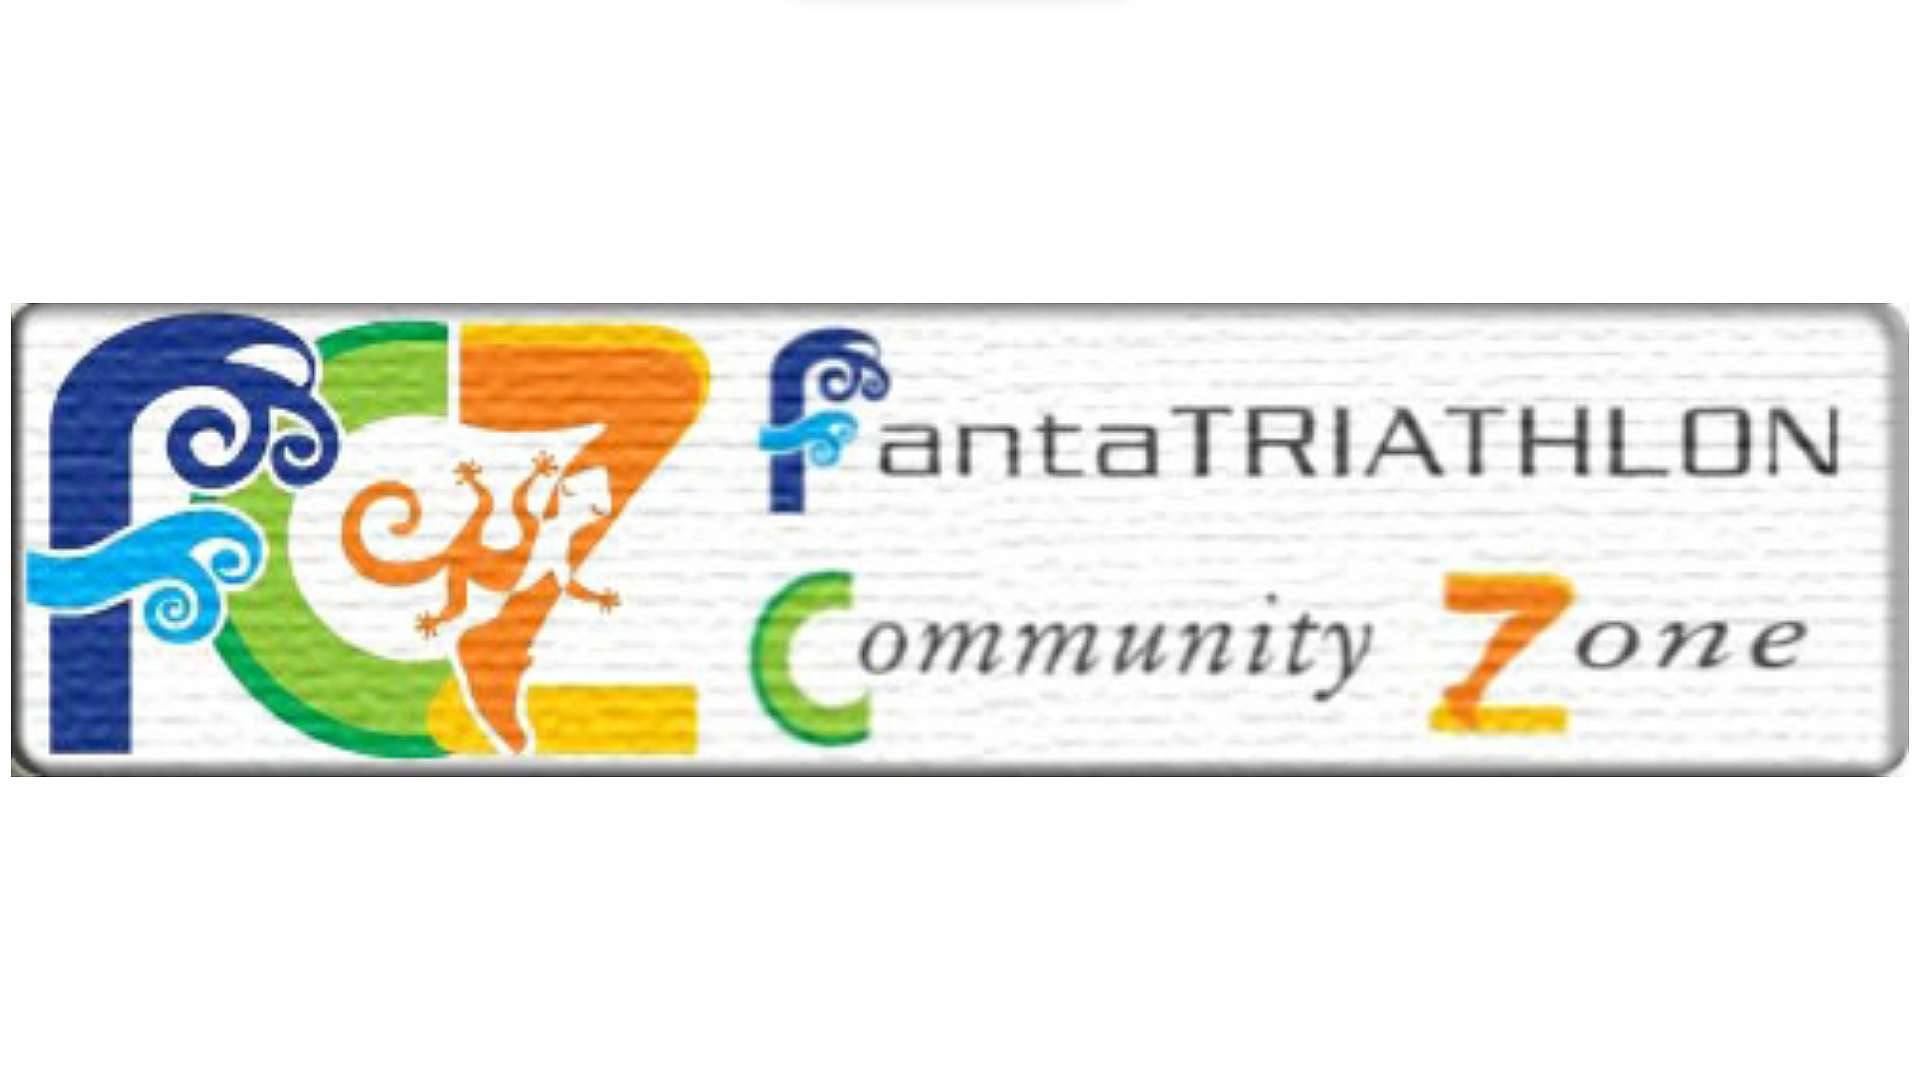 FCZ Fantatriathlon Community Zone